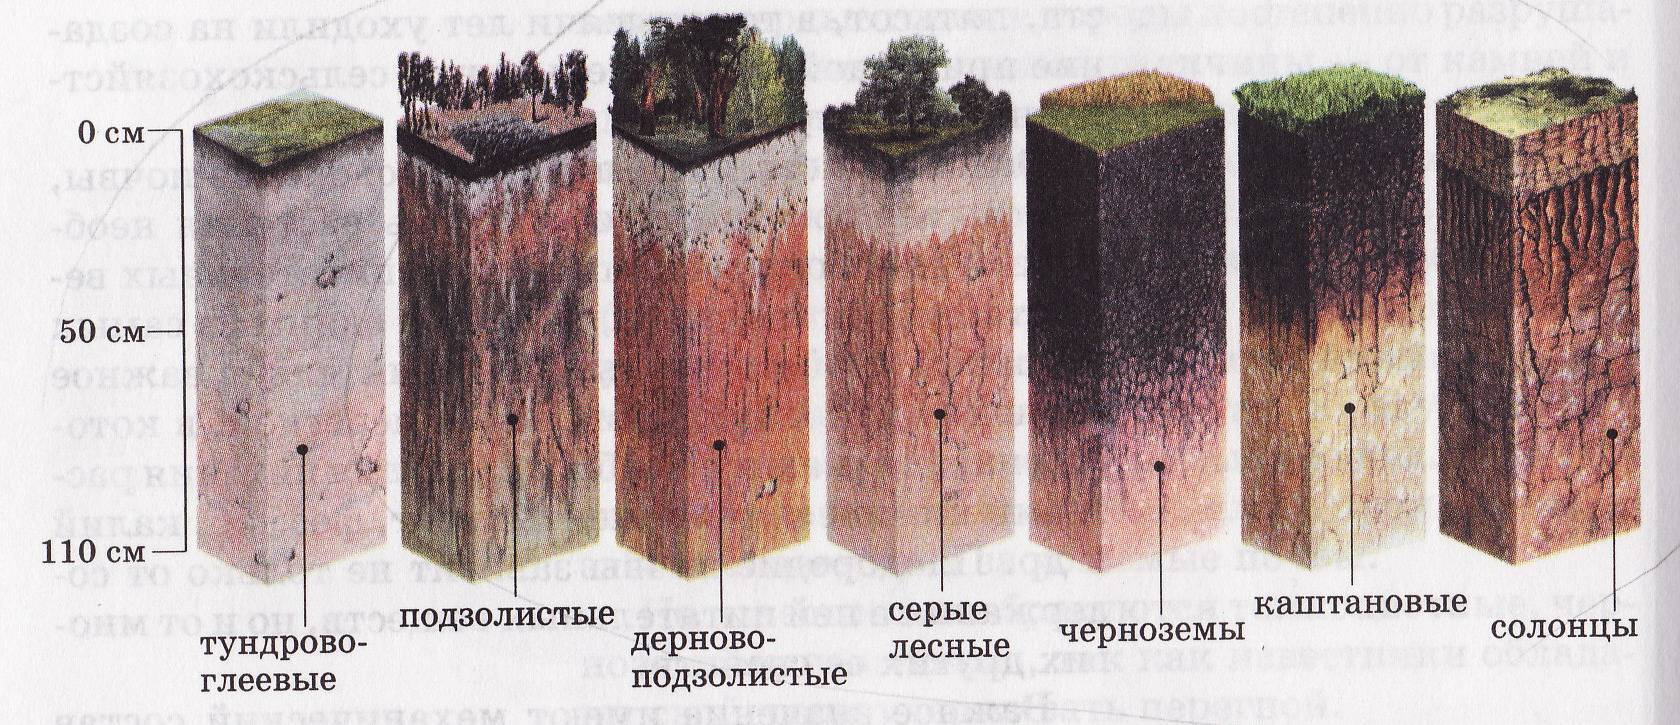 Какую толщину может достигать почва. Дерново-подзолистая, серая Лесная, чернозем почвенные горизонты. Подзолистая почва профиль почвы. Пахотные дерново-подзолистые почвы профиль. Почвенный профиль подзолистых почв.